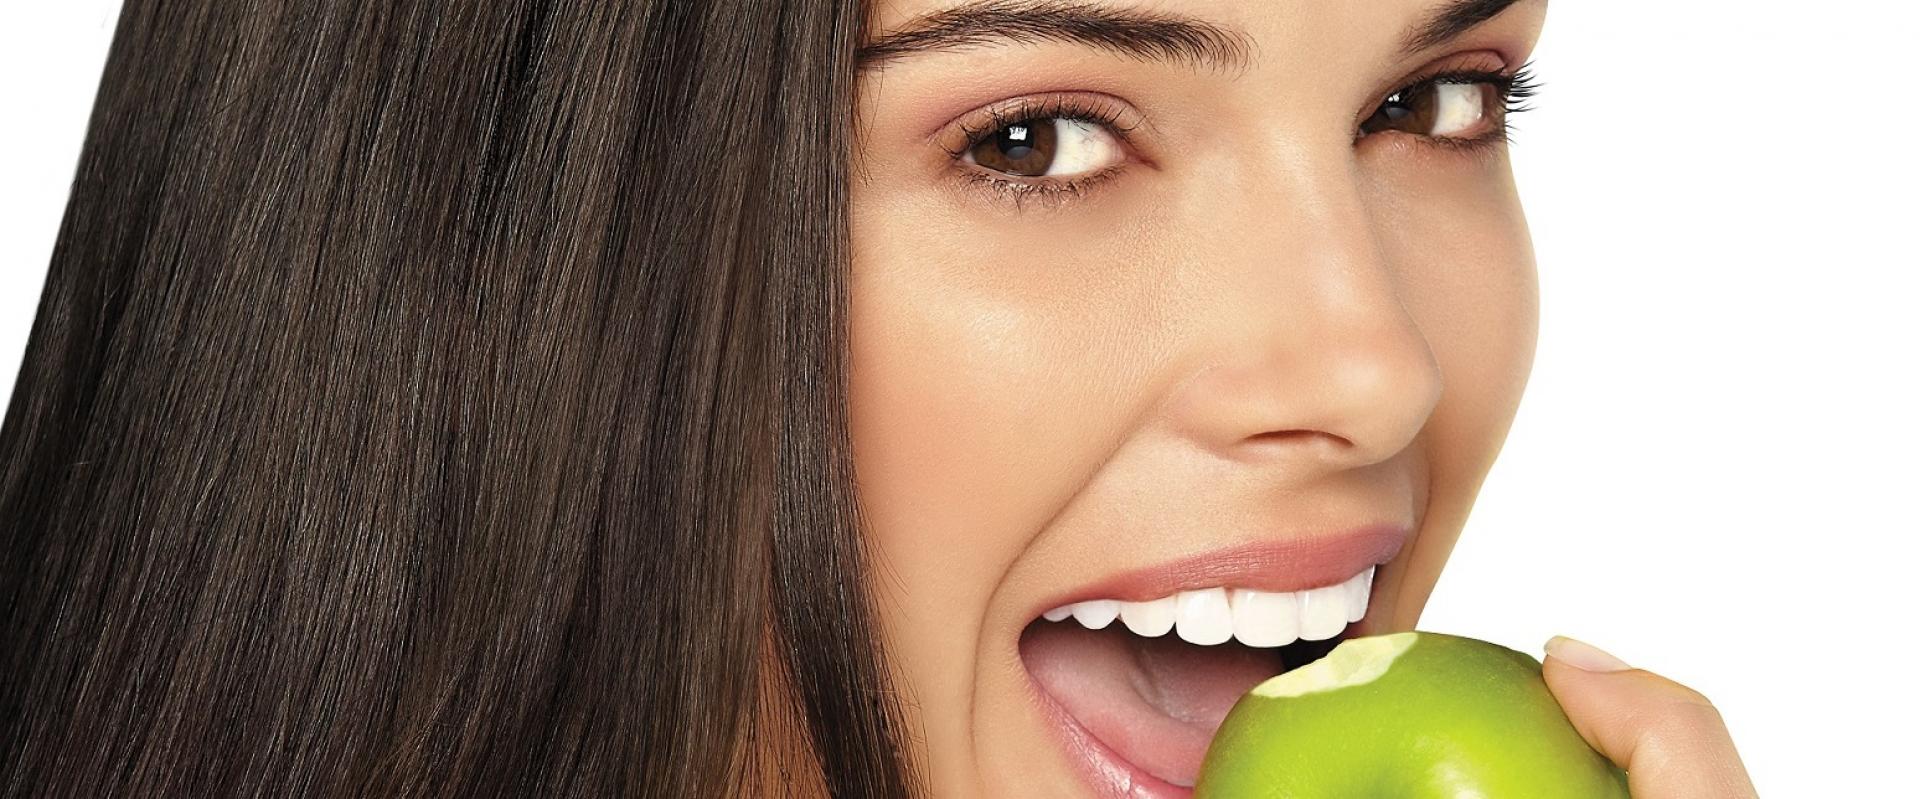 Himalaya Gum Expert – zioła w służbie pięknego uśmiechu i zdrowych dziąseł